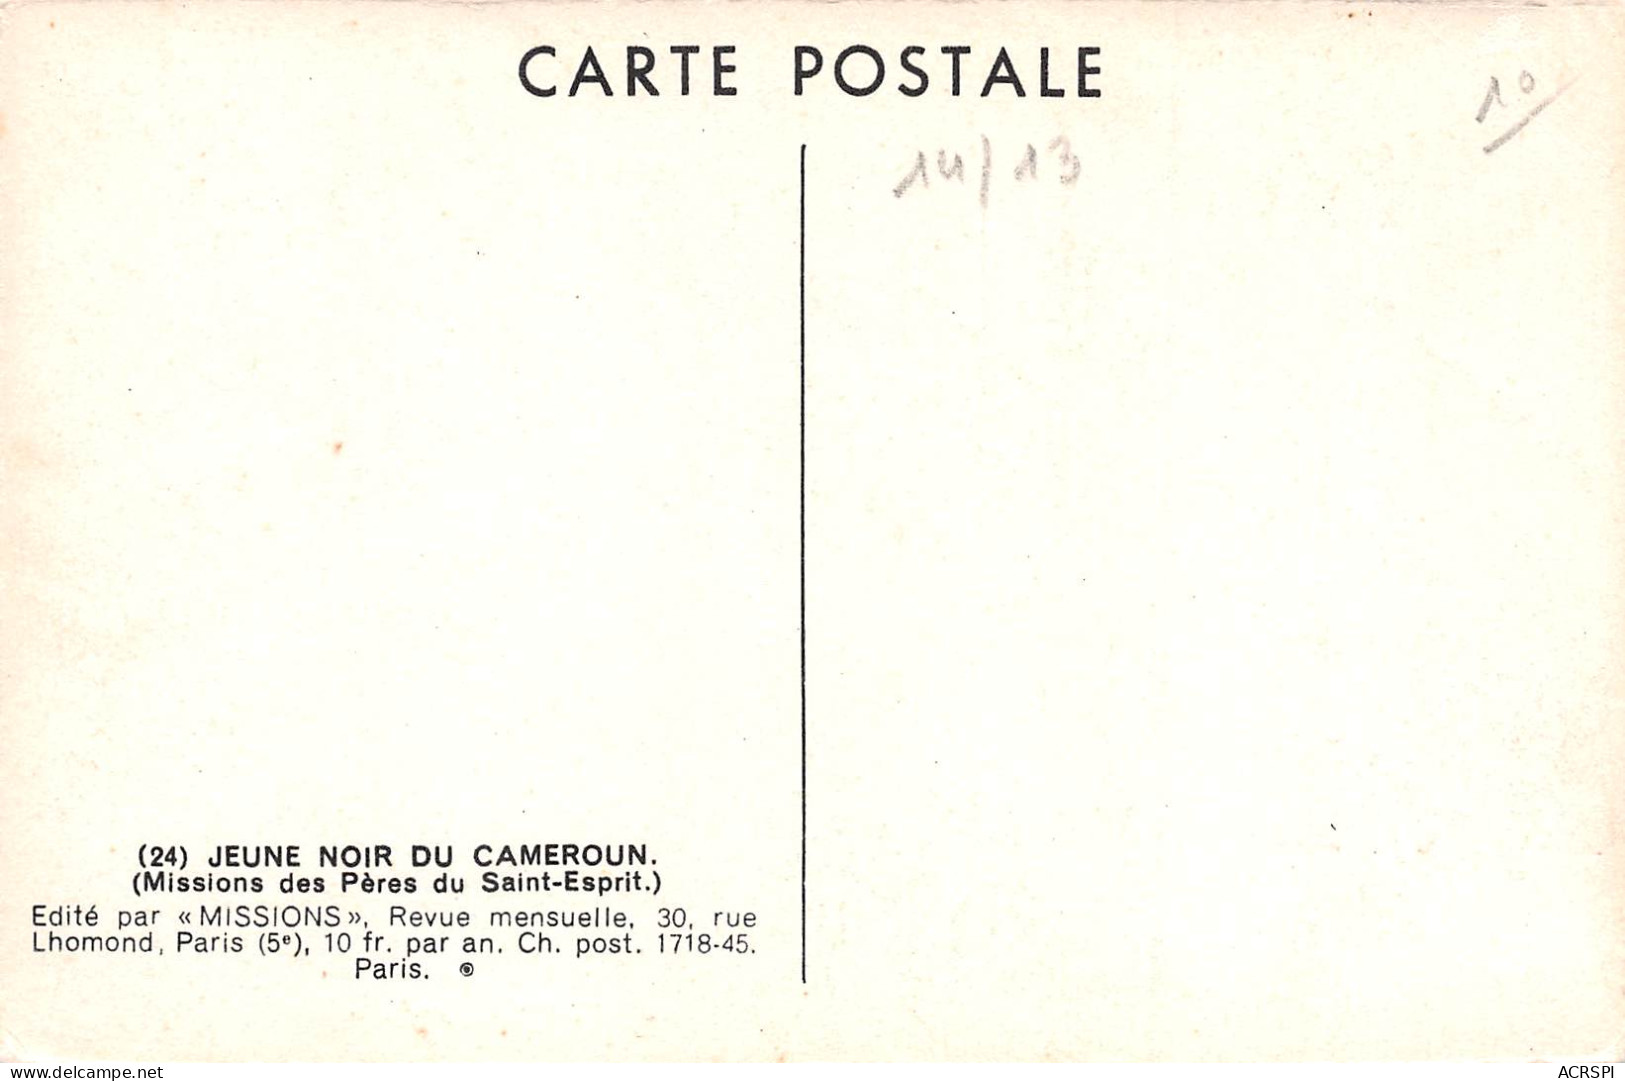 CAMEROUN DOUALA Jeune Garçon Noir N° 47 \ML4024 - Cameroun